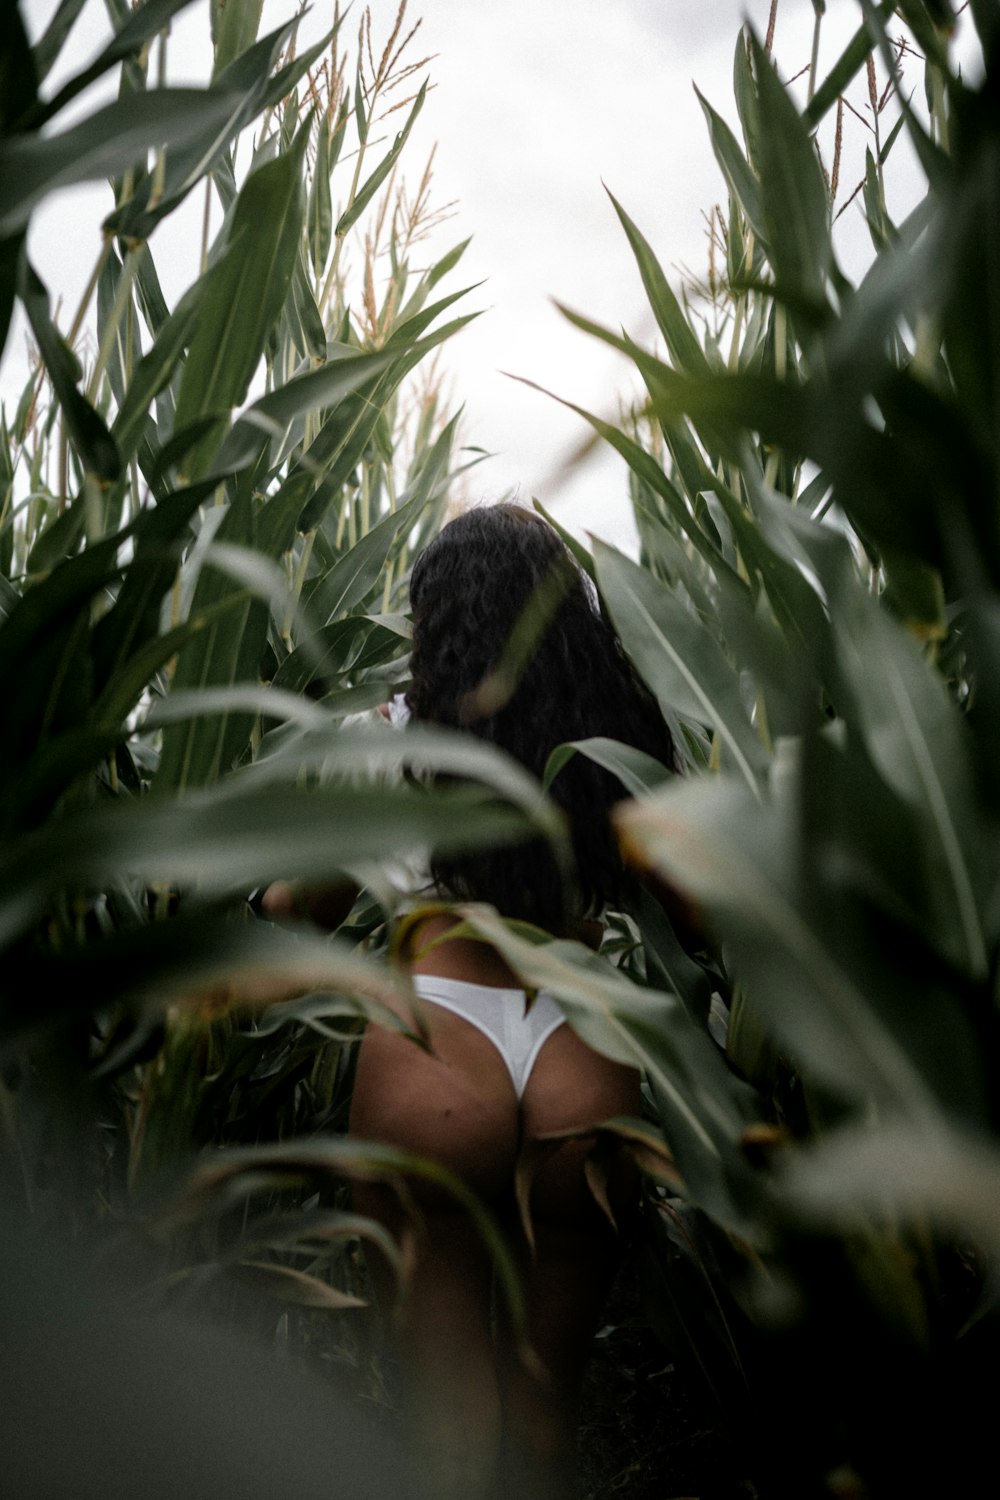 femme en noir et blanc bikini bas debout au milieu des plantes vertes pendant la journée